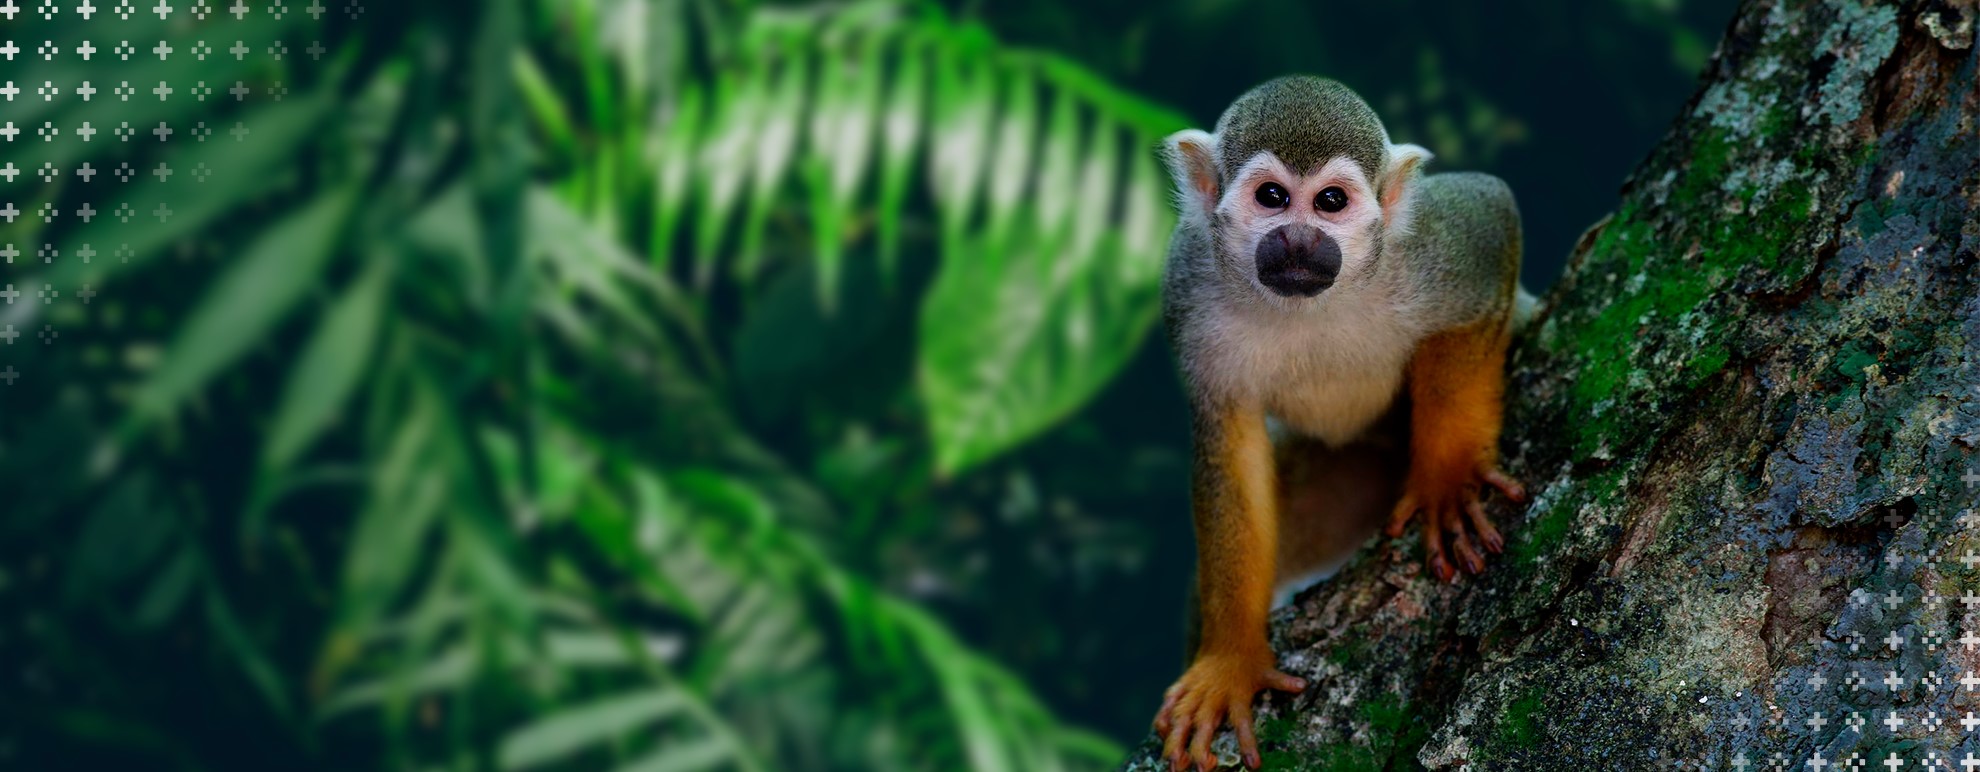 Ecologia - imagem mostra, em primeiro plano, um macaco da espécie mico-de-cheiro, sobre um tronco, olhando diretamente para a câmera. O plano de fundo contém algumas plantas, desfocadas.